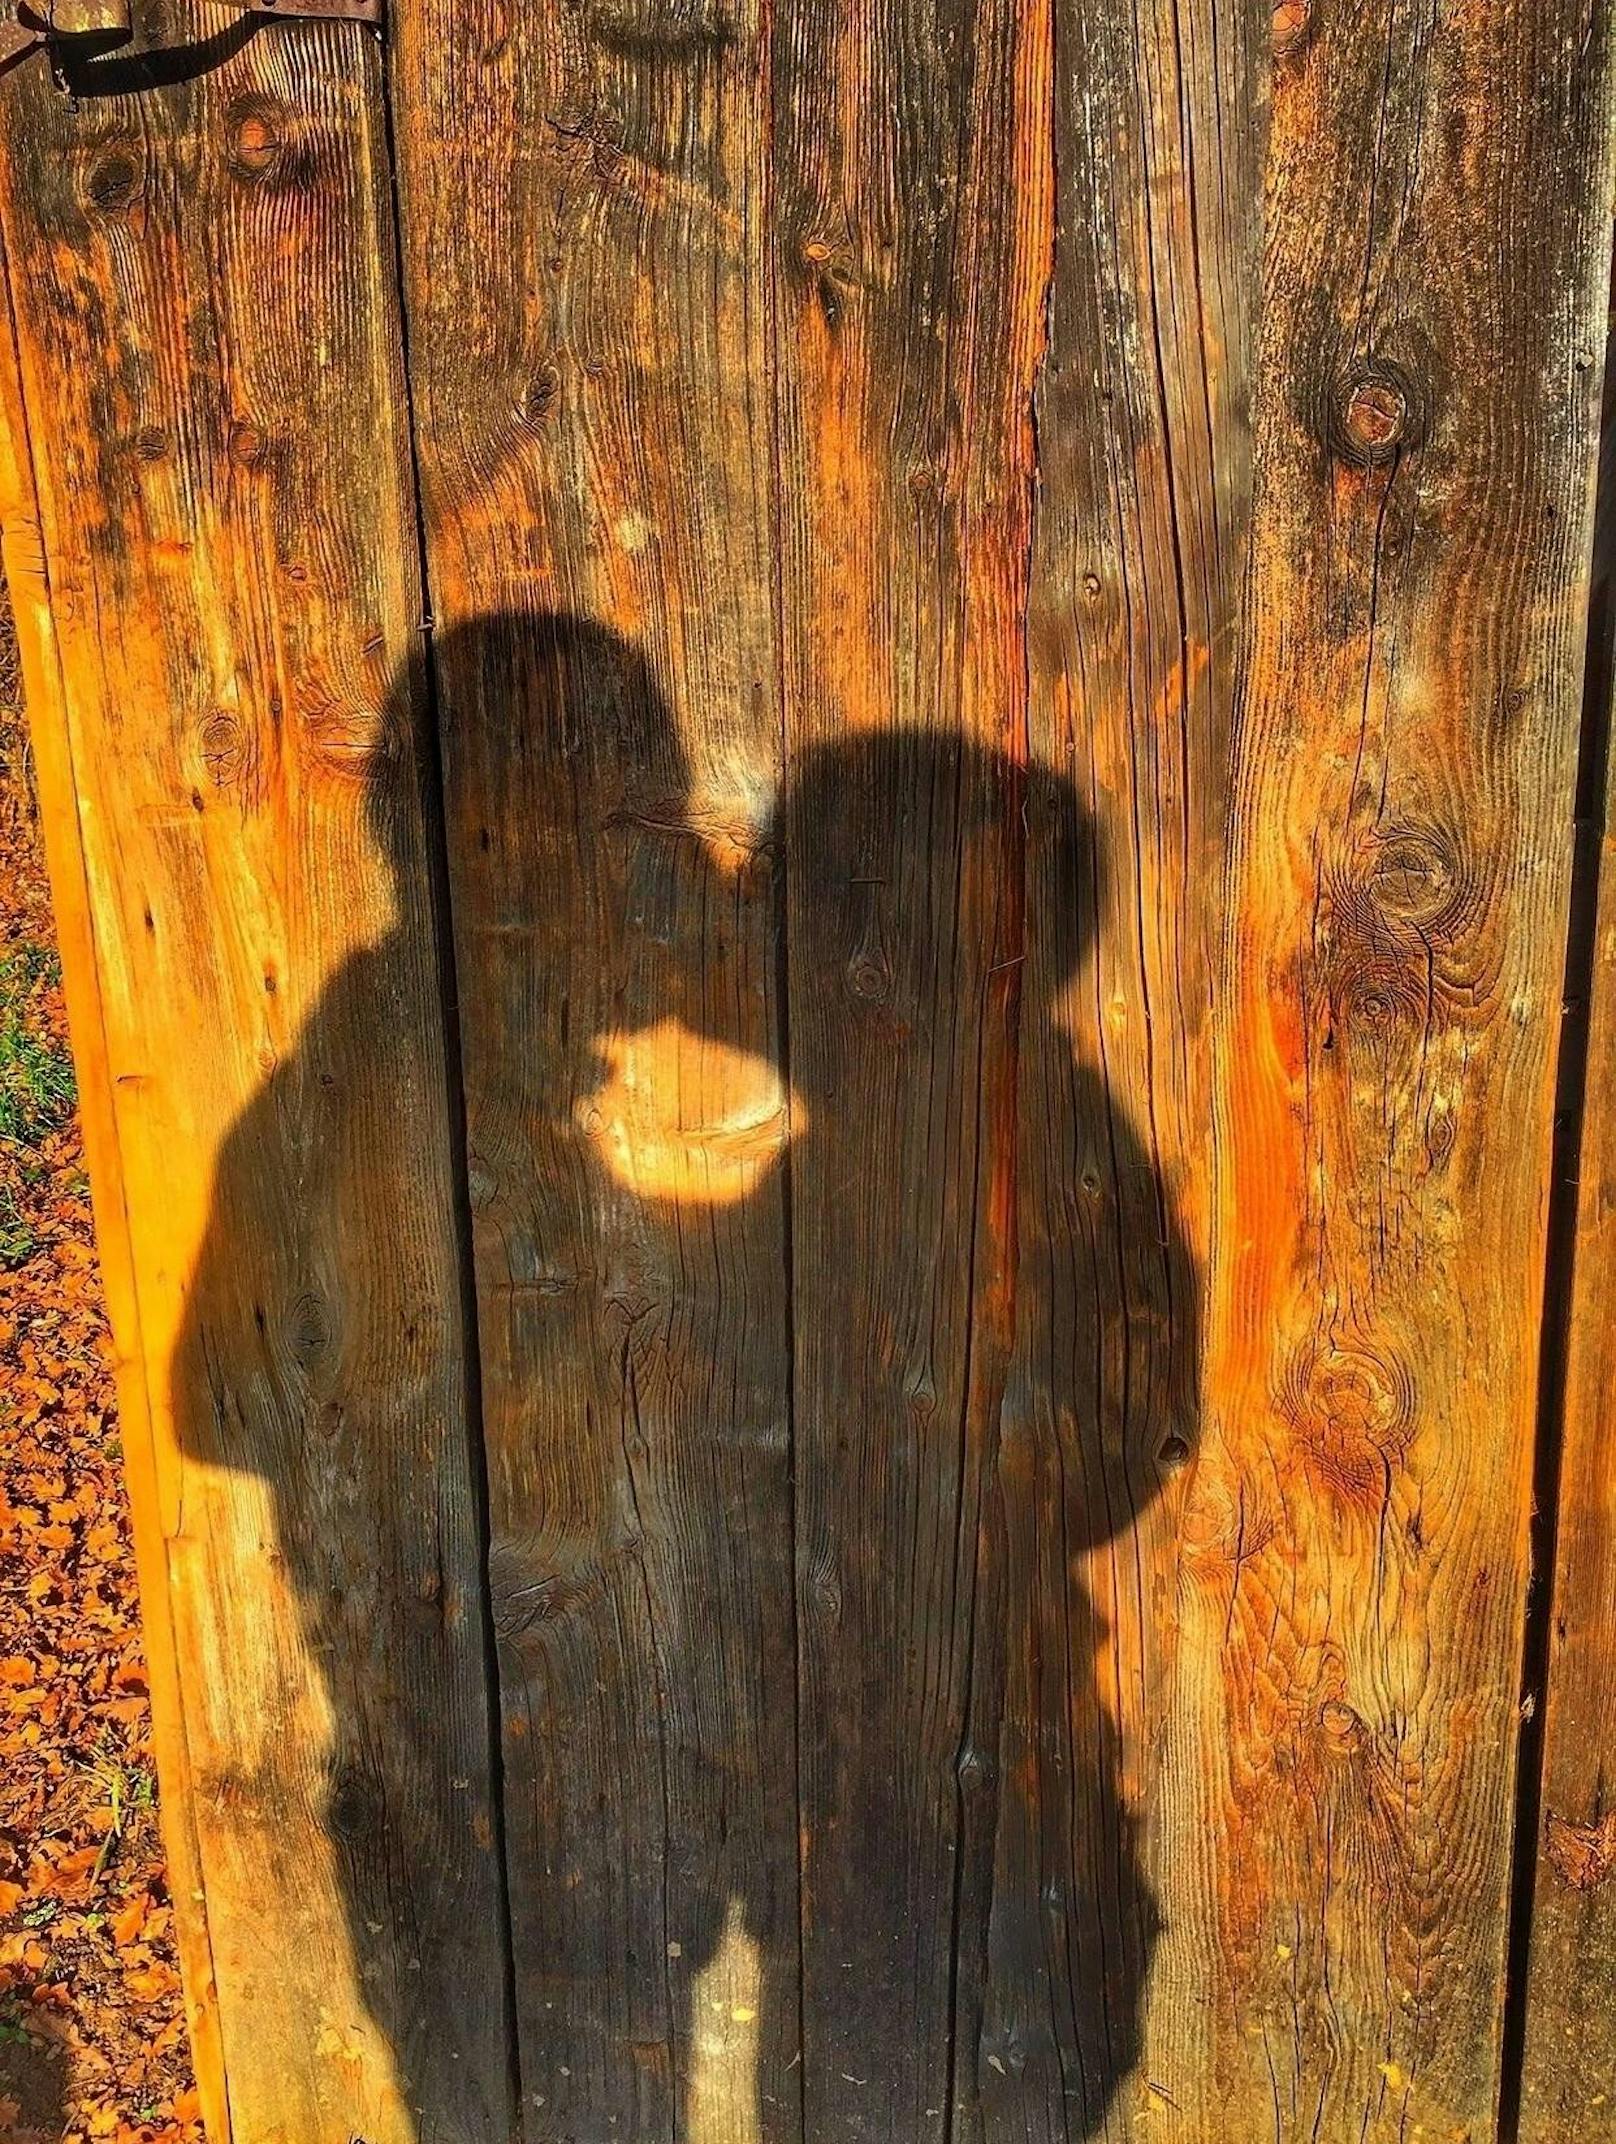 Wenn sich die Schatten auch küssen hat man den richtigen Partner gefunden.